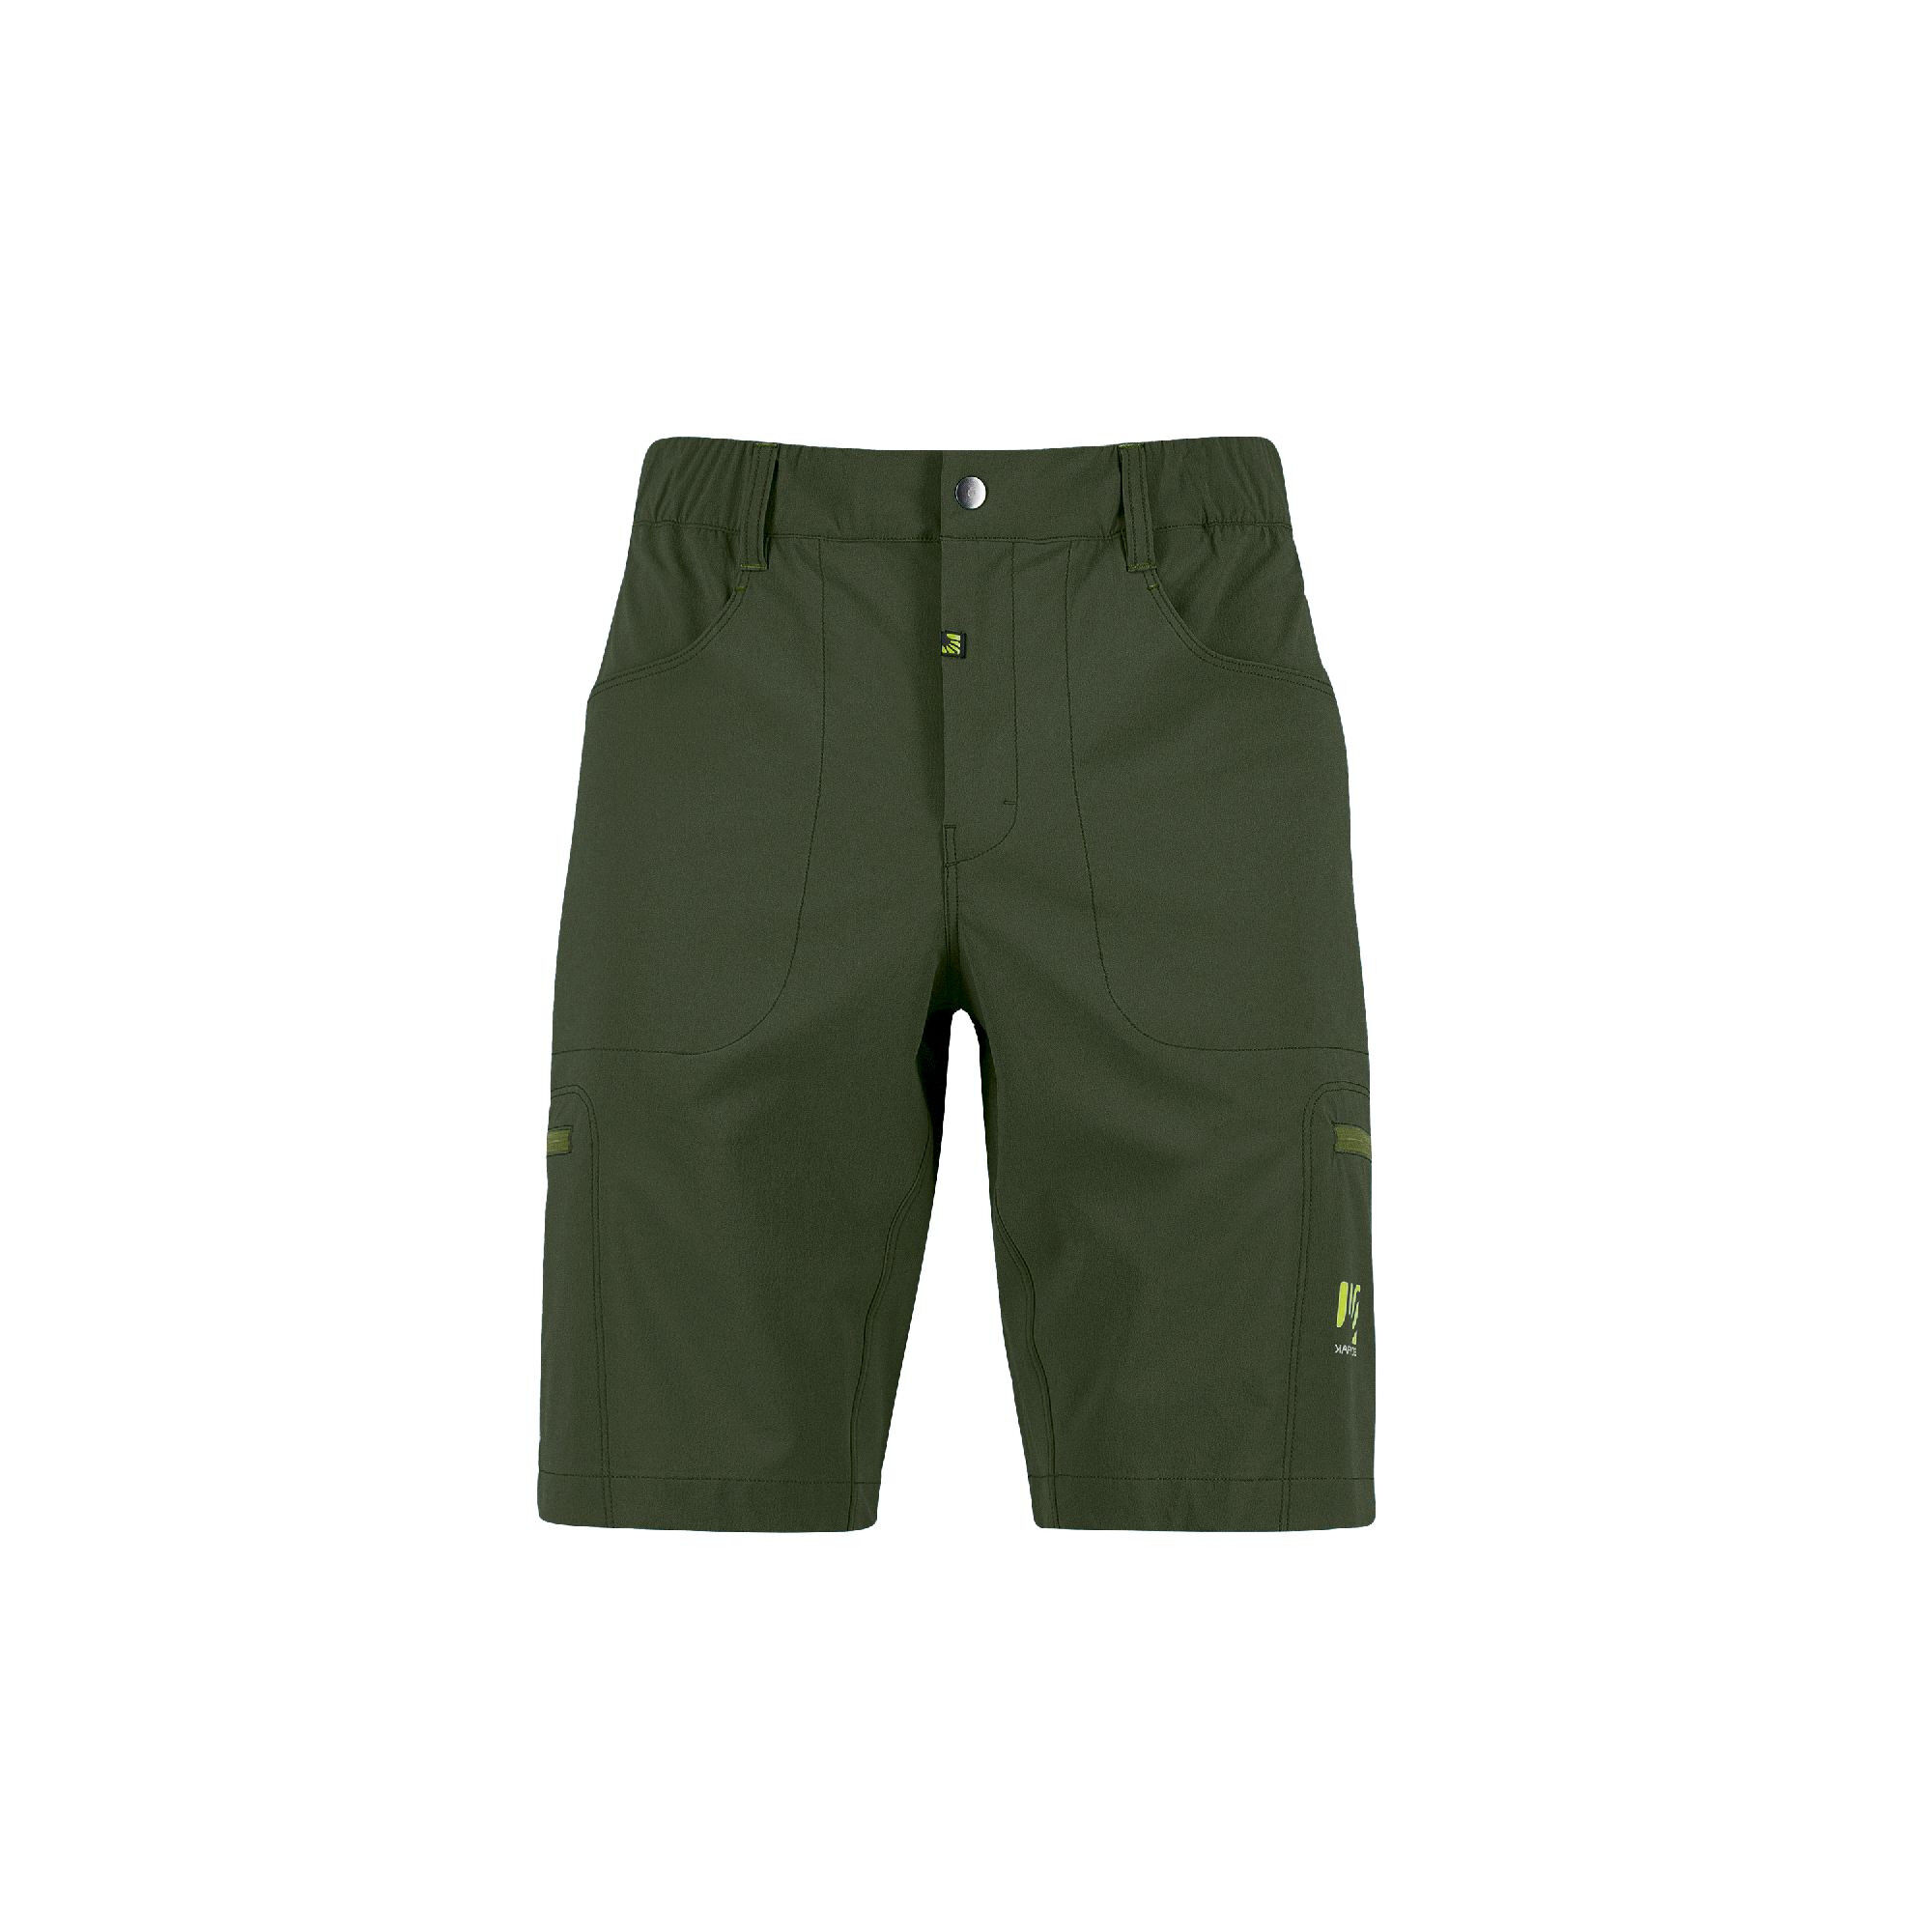 Karpos Fantasia Bermuda - Pantalones cortos de escalada - Hombre